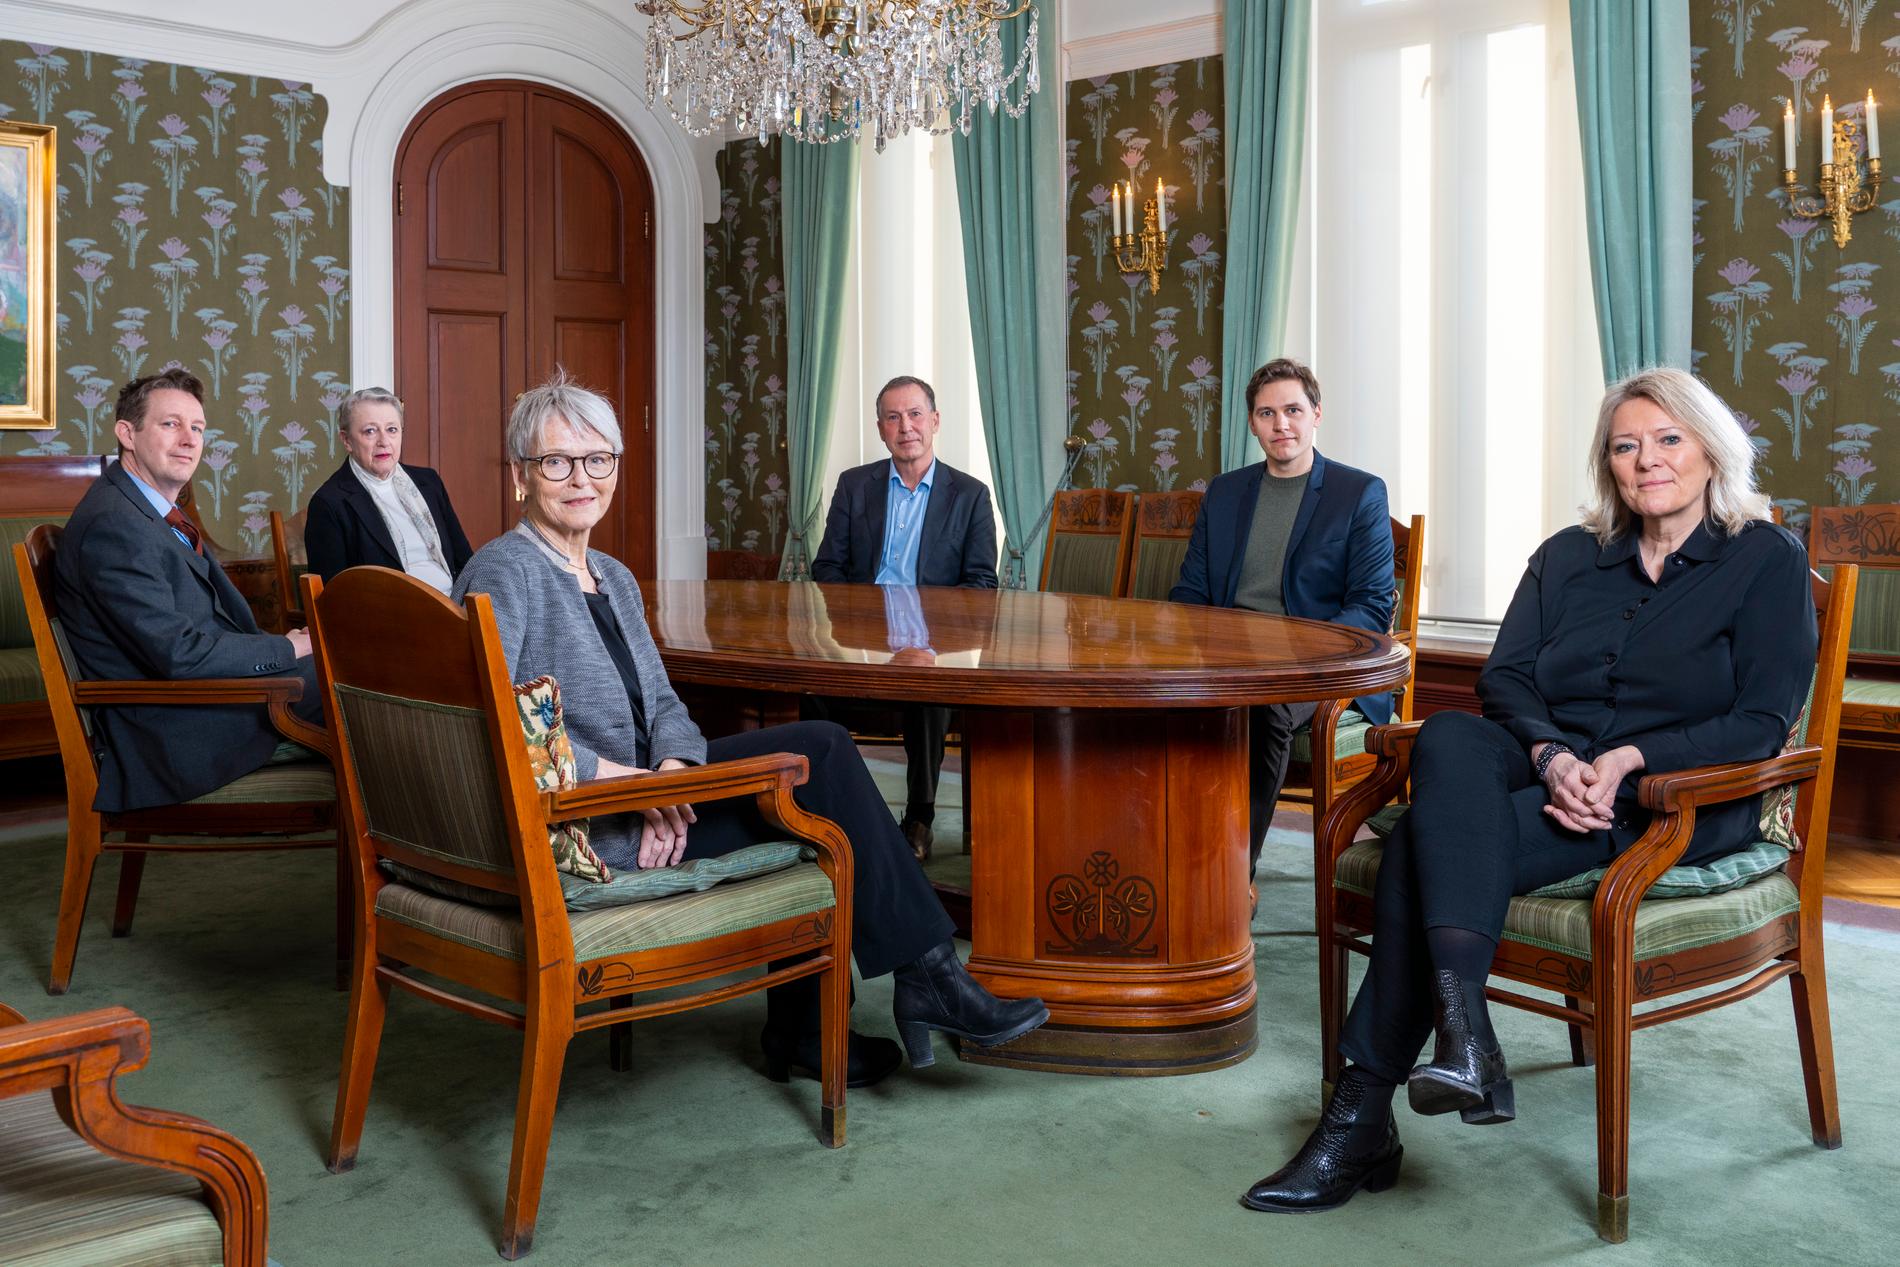 Här är kommittén som väljer vem som ska tilldelas Nobels fredspris. Från vänster Asle Toje, Berit Reiss-Andersen (ordförande), Anne Enger, Olav Njølstad (sekreterare), Jørgen Watne Frydnes och Kristin Clemet. Arkivfoto.